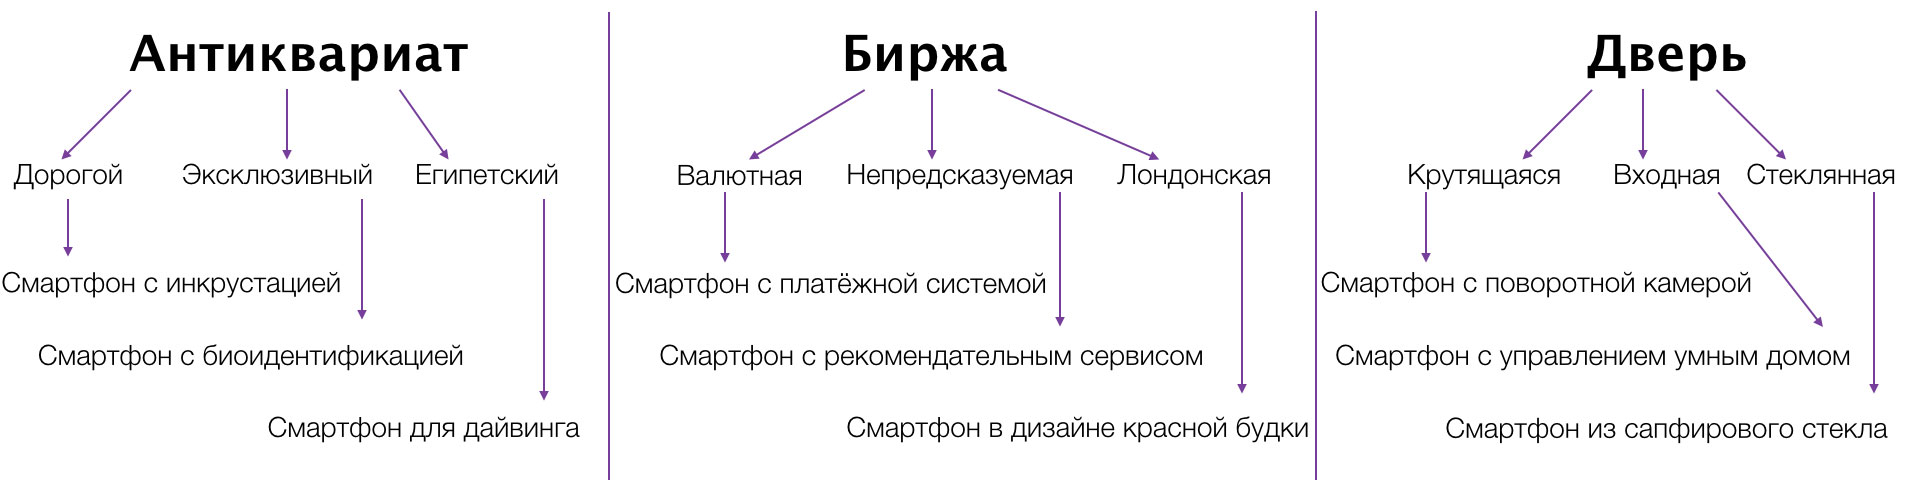 Иллюстрация примера метода фокальных объектов